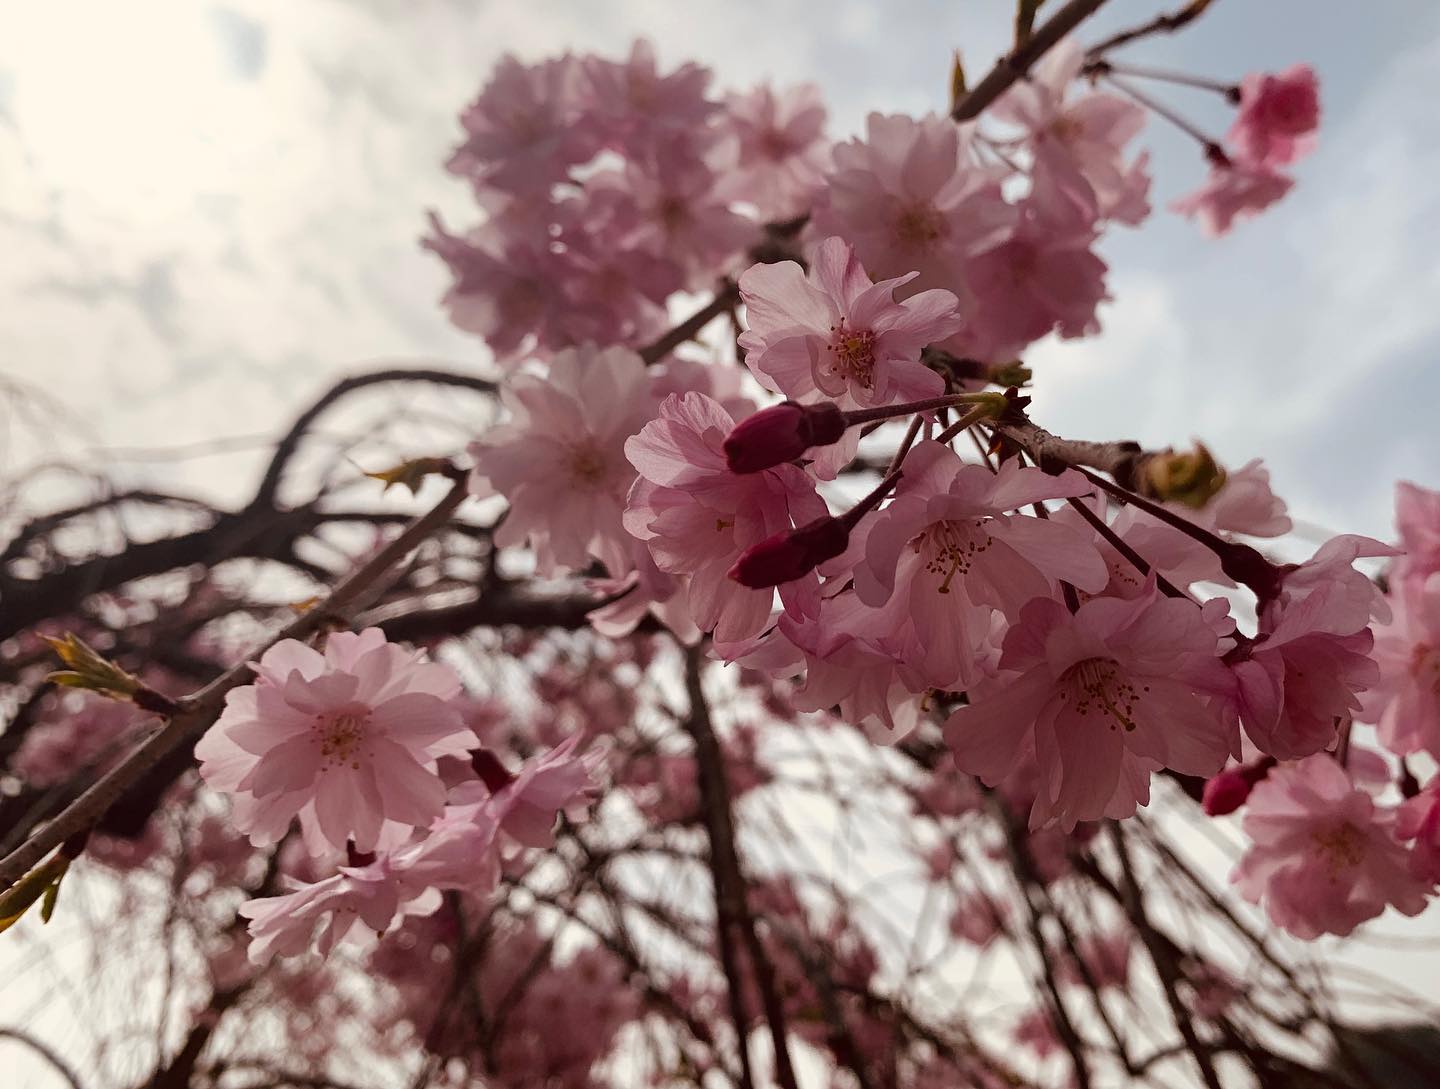 桜を愛でつつ、肉焼きつつ。個人的桜まつり。桜を撮ってみたくて一眼カメラ持ってきたのに試し撮りにと一枚撮ったら電池がなくなるというありさま。肉が美味しく撮れました。#ケースの中で #電源オン #機材あるある